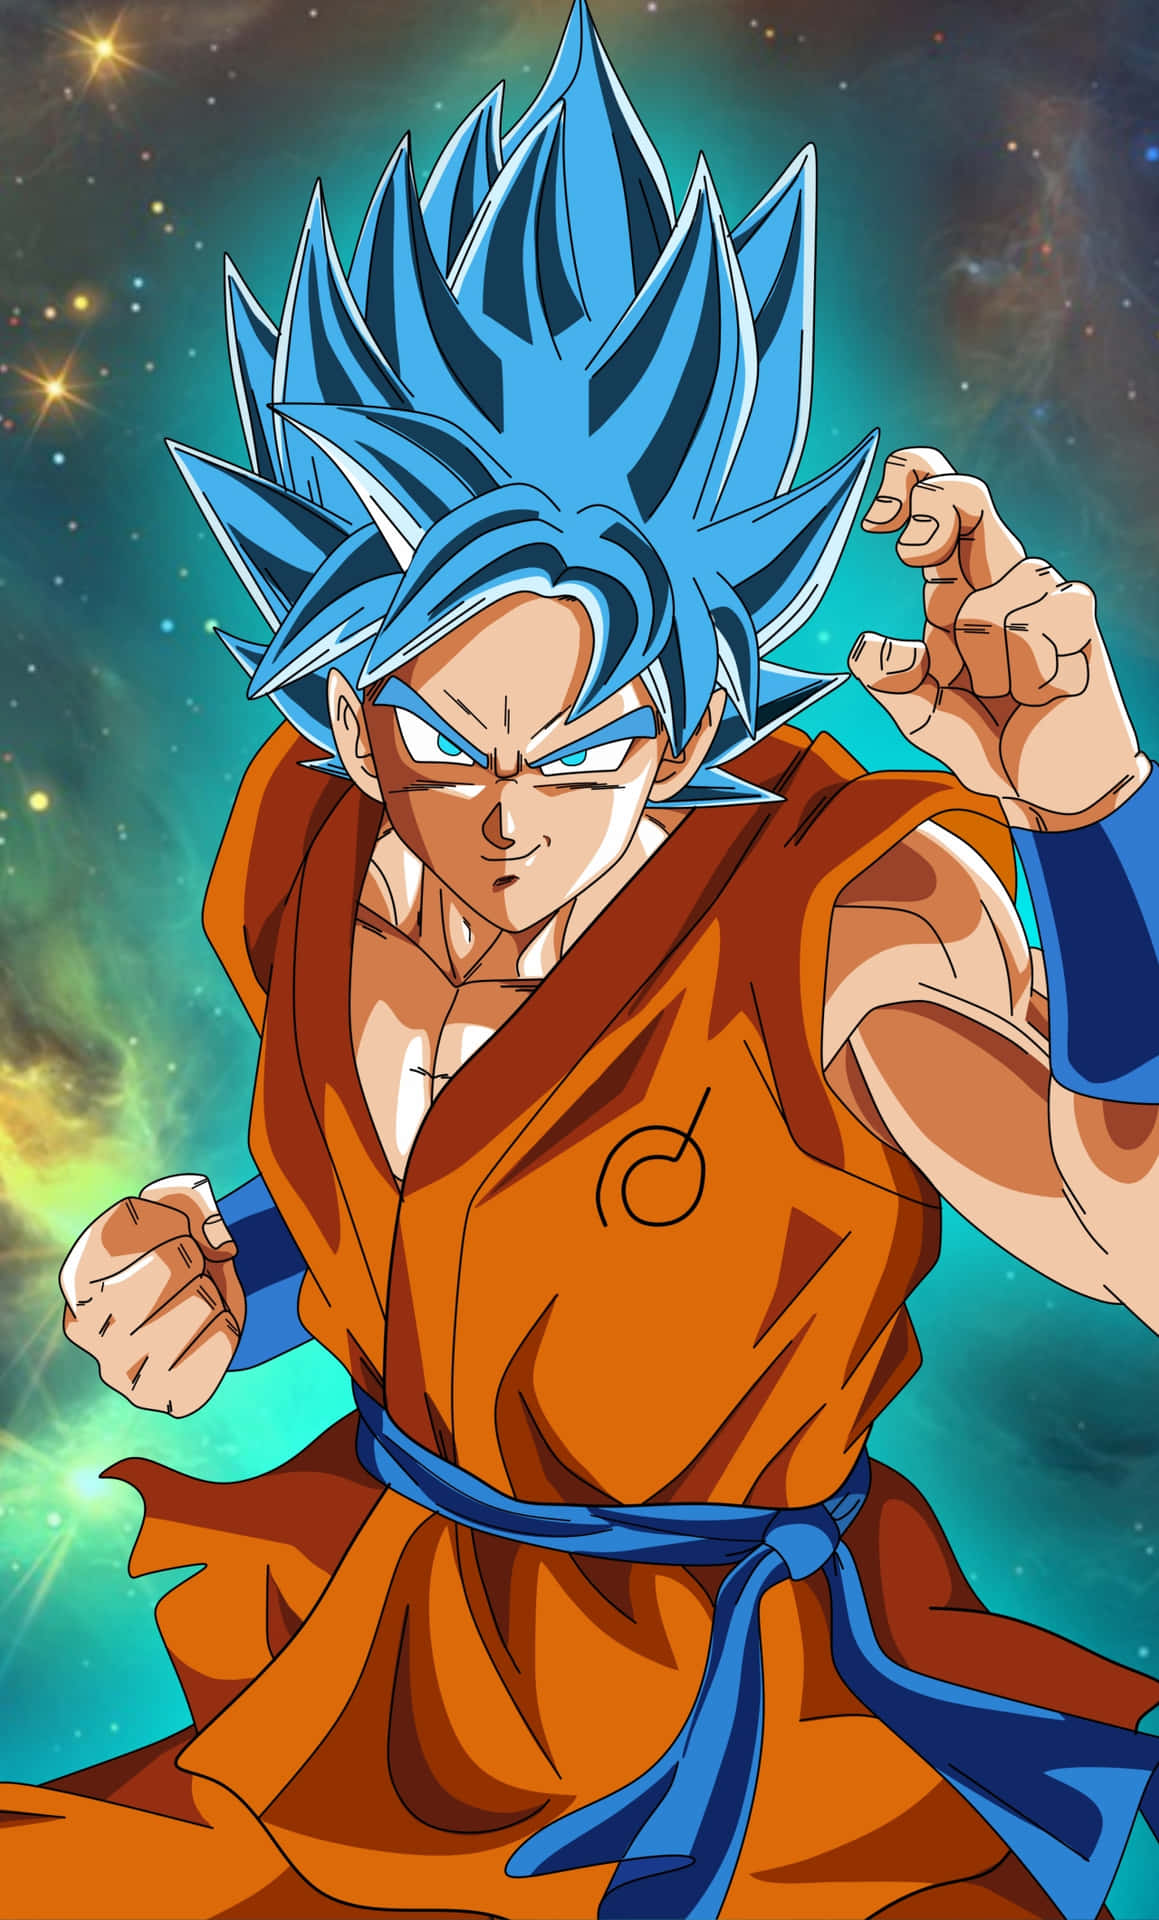 Caption: The Unstoppable Power - Goku Super Saiyan